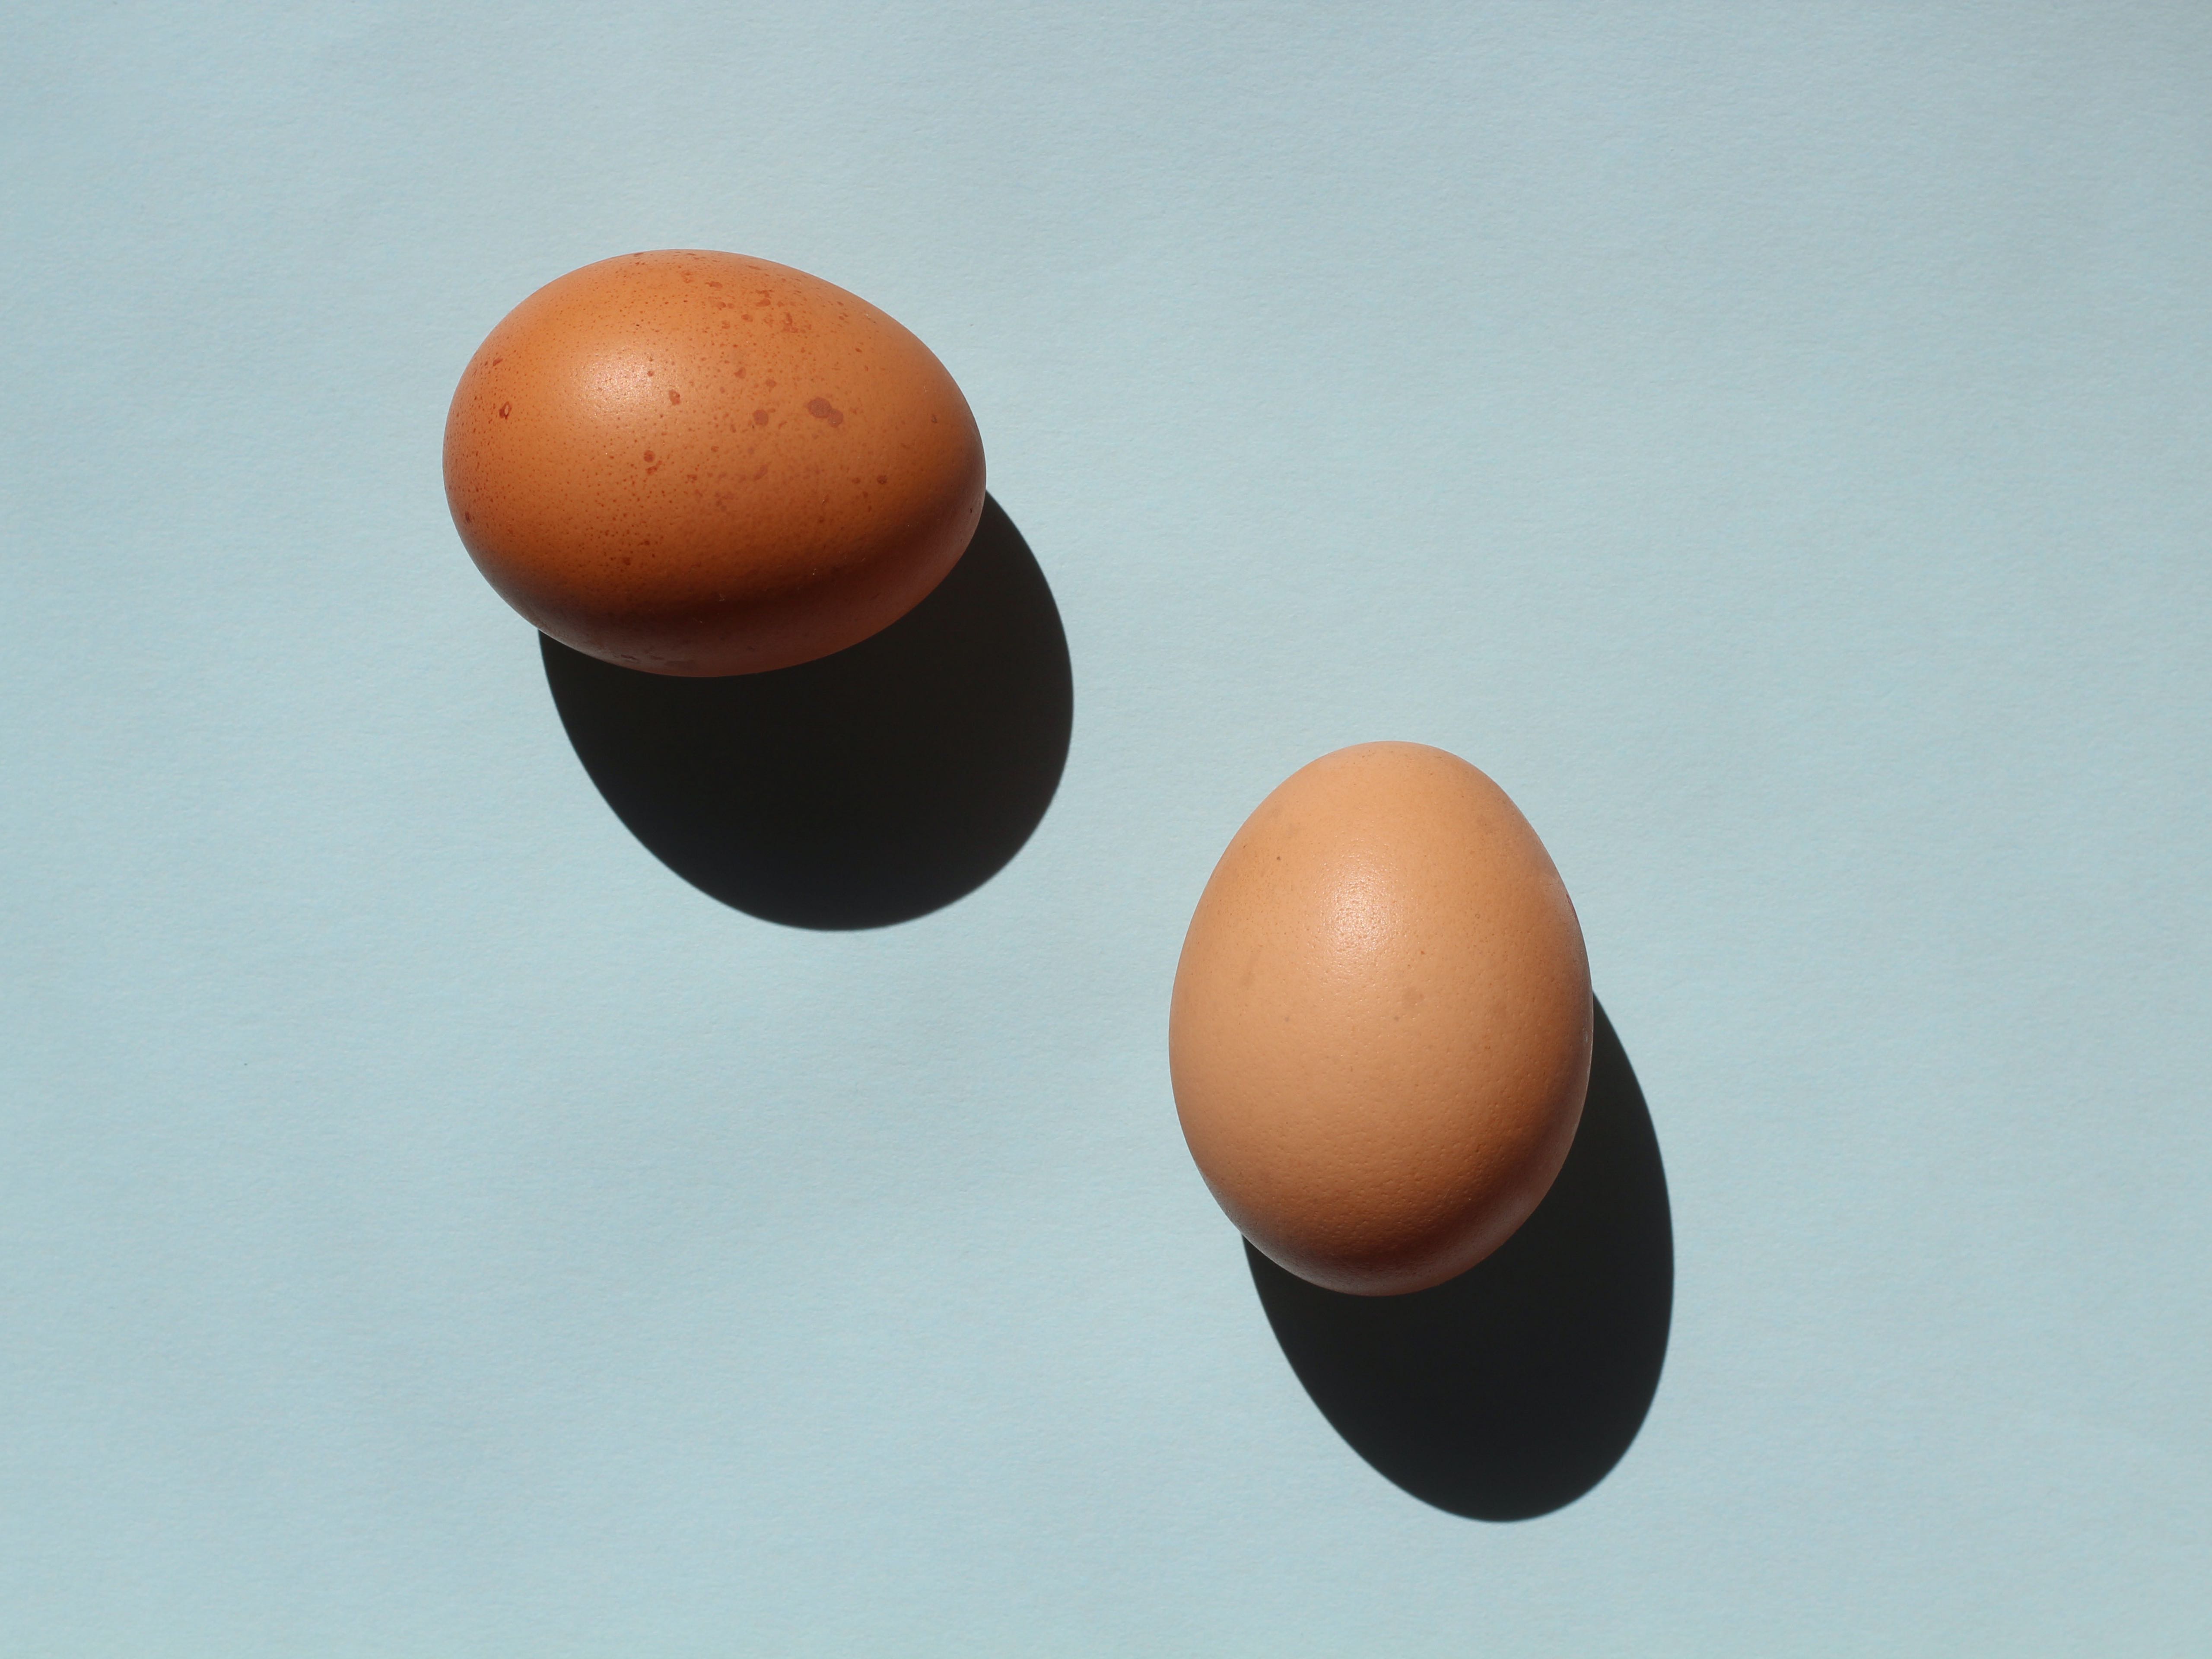 Ασπράδι ή ολόκληρο το αυγό: Τι είναι προτιμότερο;